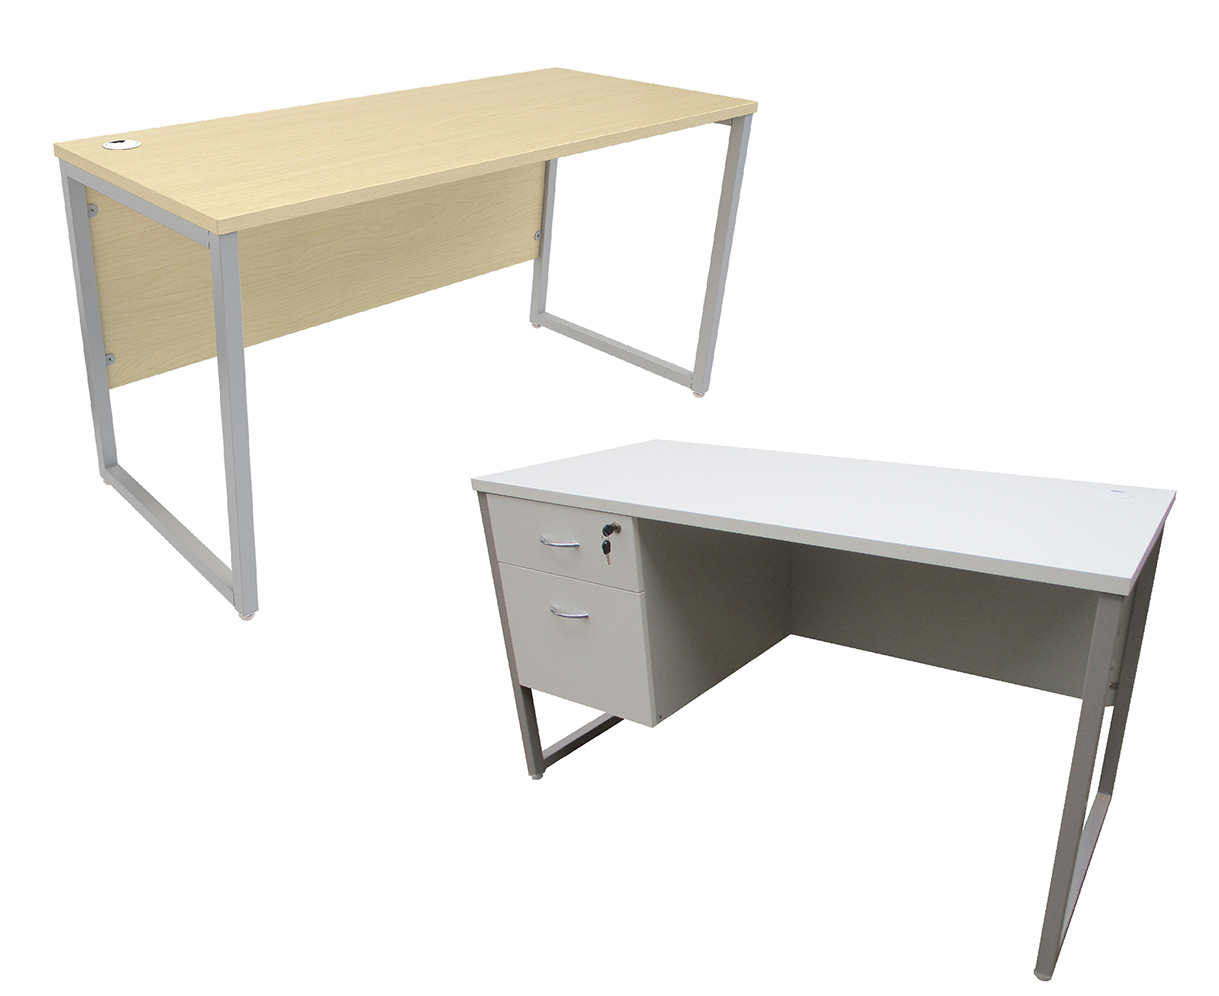 โต๊ะทำงานขาเหล็ก SSTU (ขาเหล็กสี่เหลี่ยมด้านเท่า กรอบรูปตัวโอ หน้าโต๊ะไม่ยกลอยจากขา)